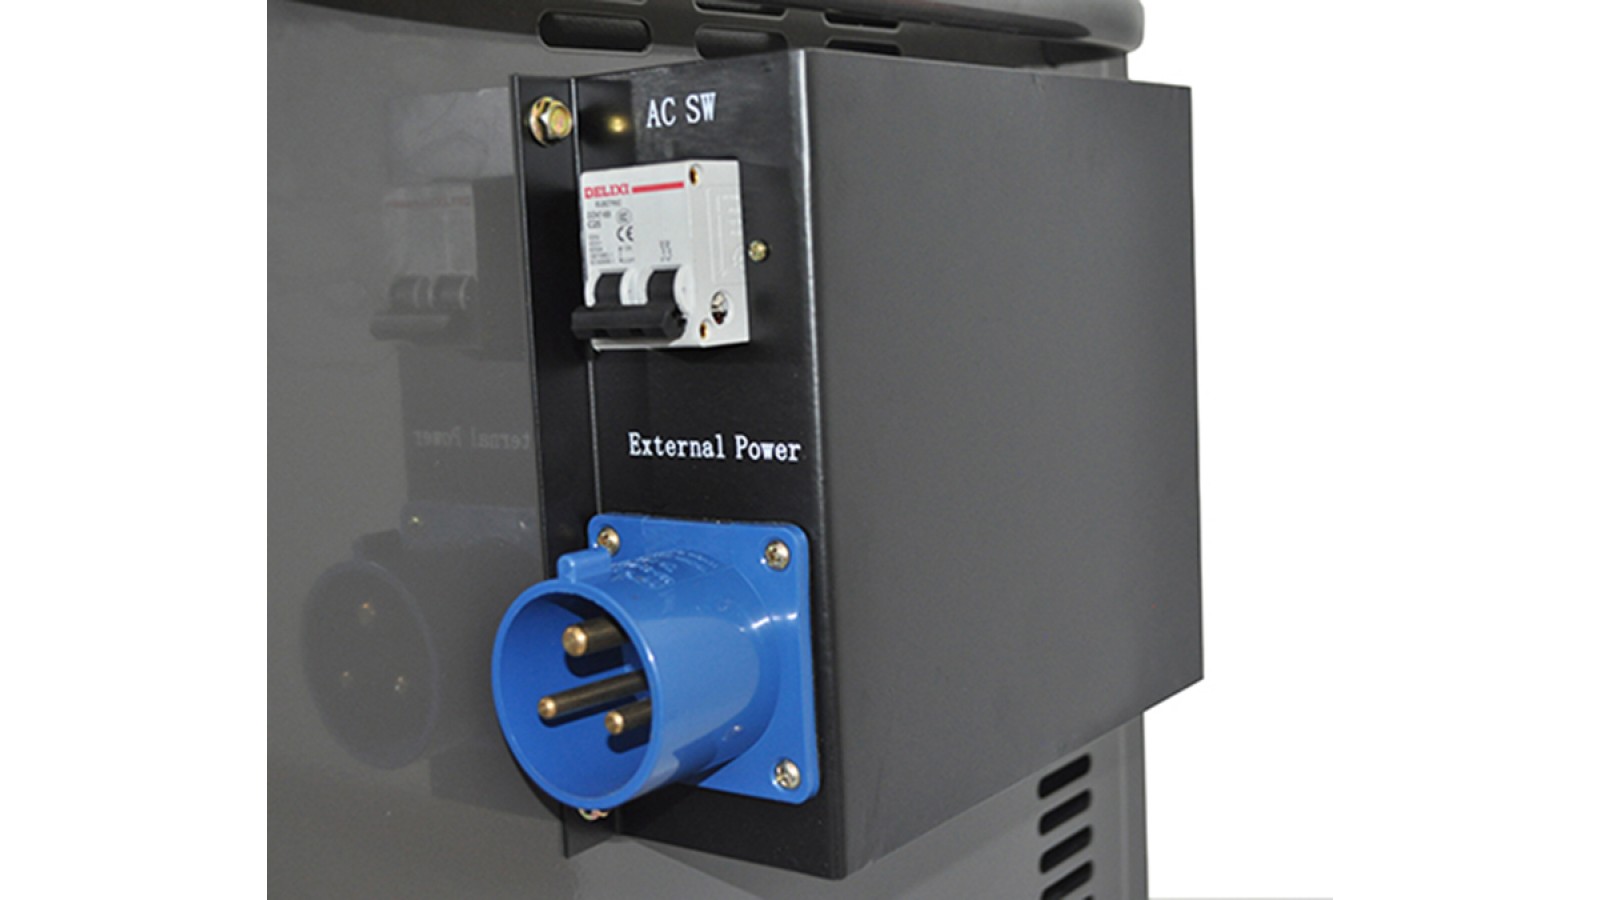 Generatore di corrente Diesel 4.5 KW - Gruppo elettrogeno silenziato - Avviamento elettrico Automatico ATS